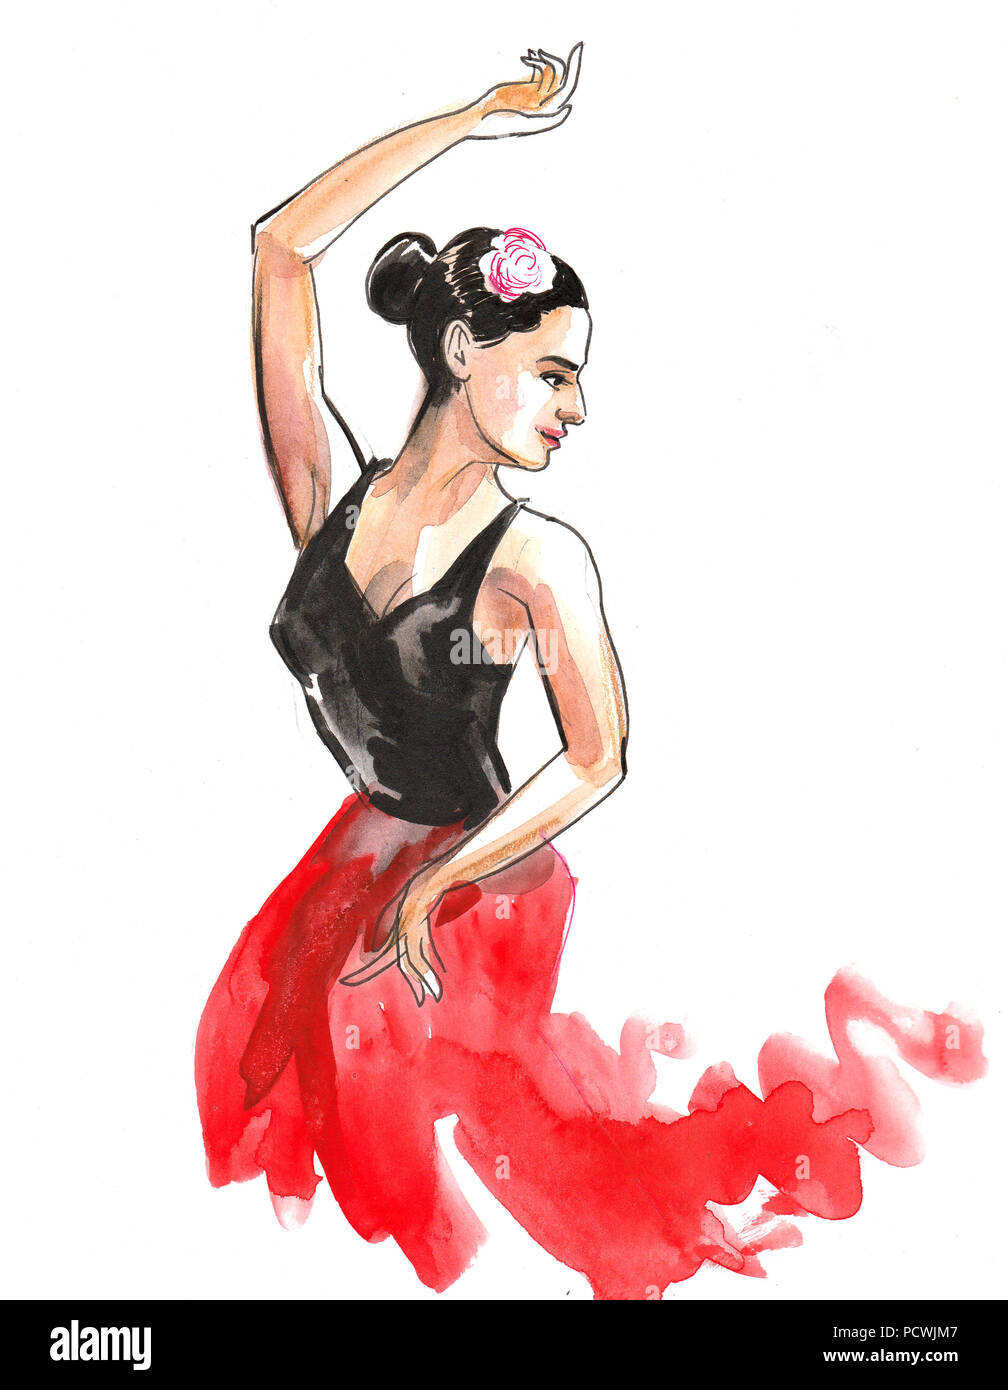 Flamenco illustration immagini e fotografie stock ad alta risoluzione -  Alamy